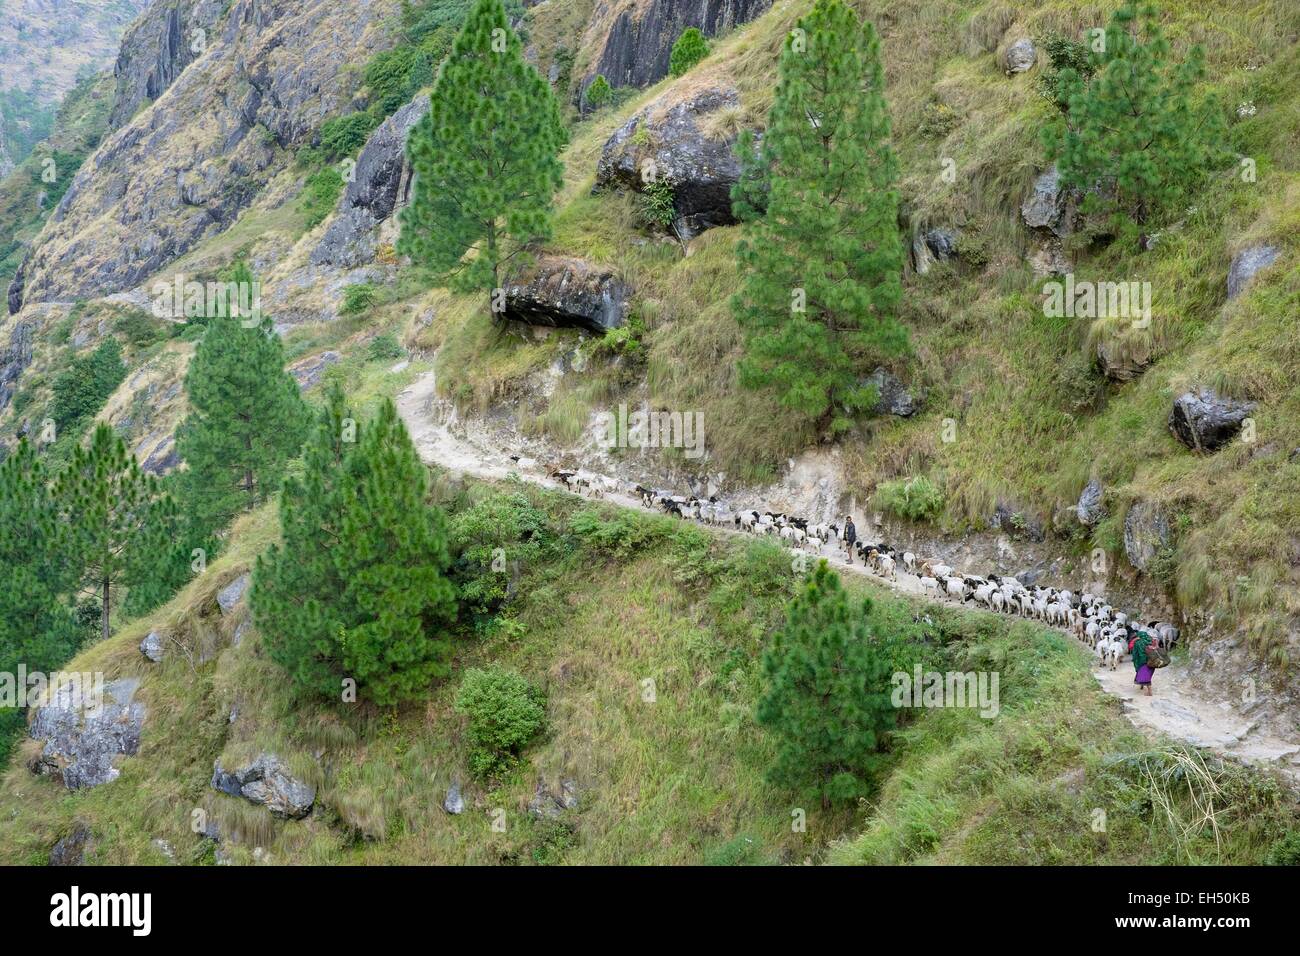 Le Népal, Gandaki zone, Manaslu Circuit, entre Philim et Prok, bergers et leur troupeau de moutons Banque D'Images